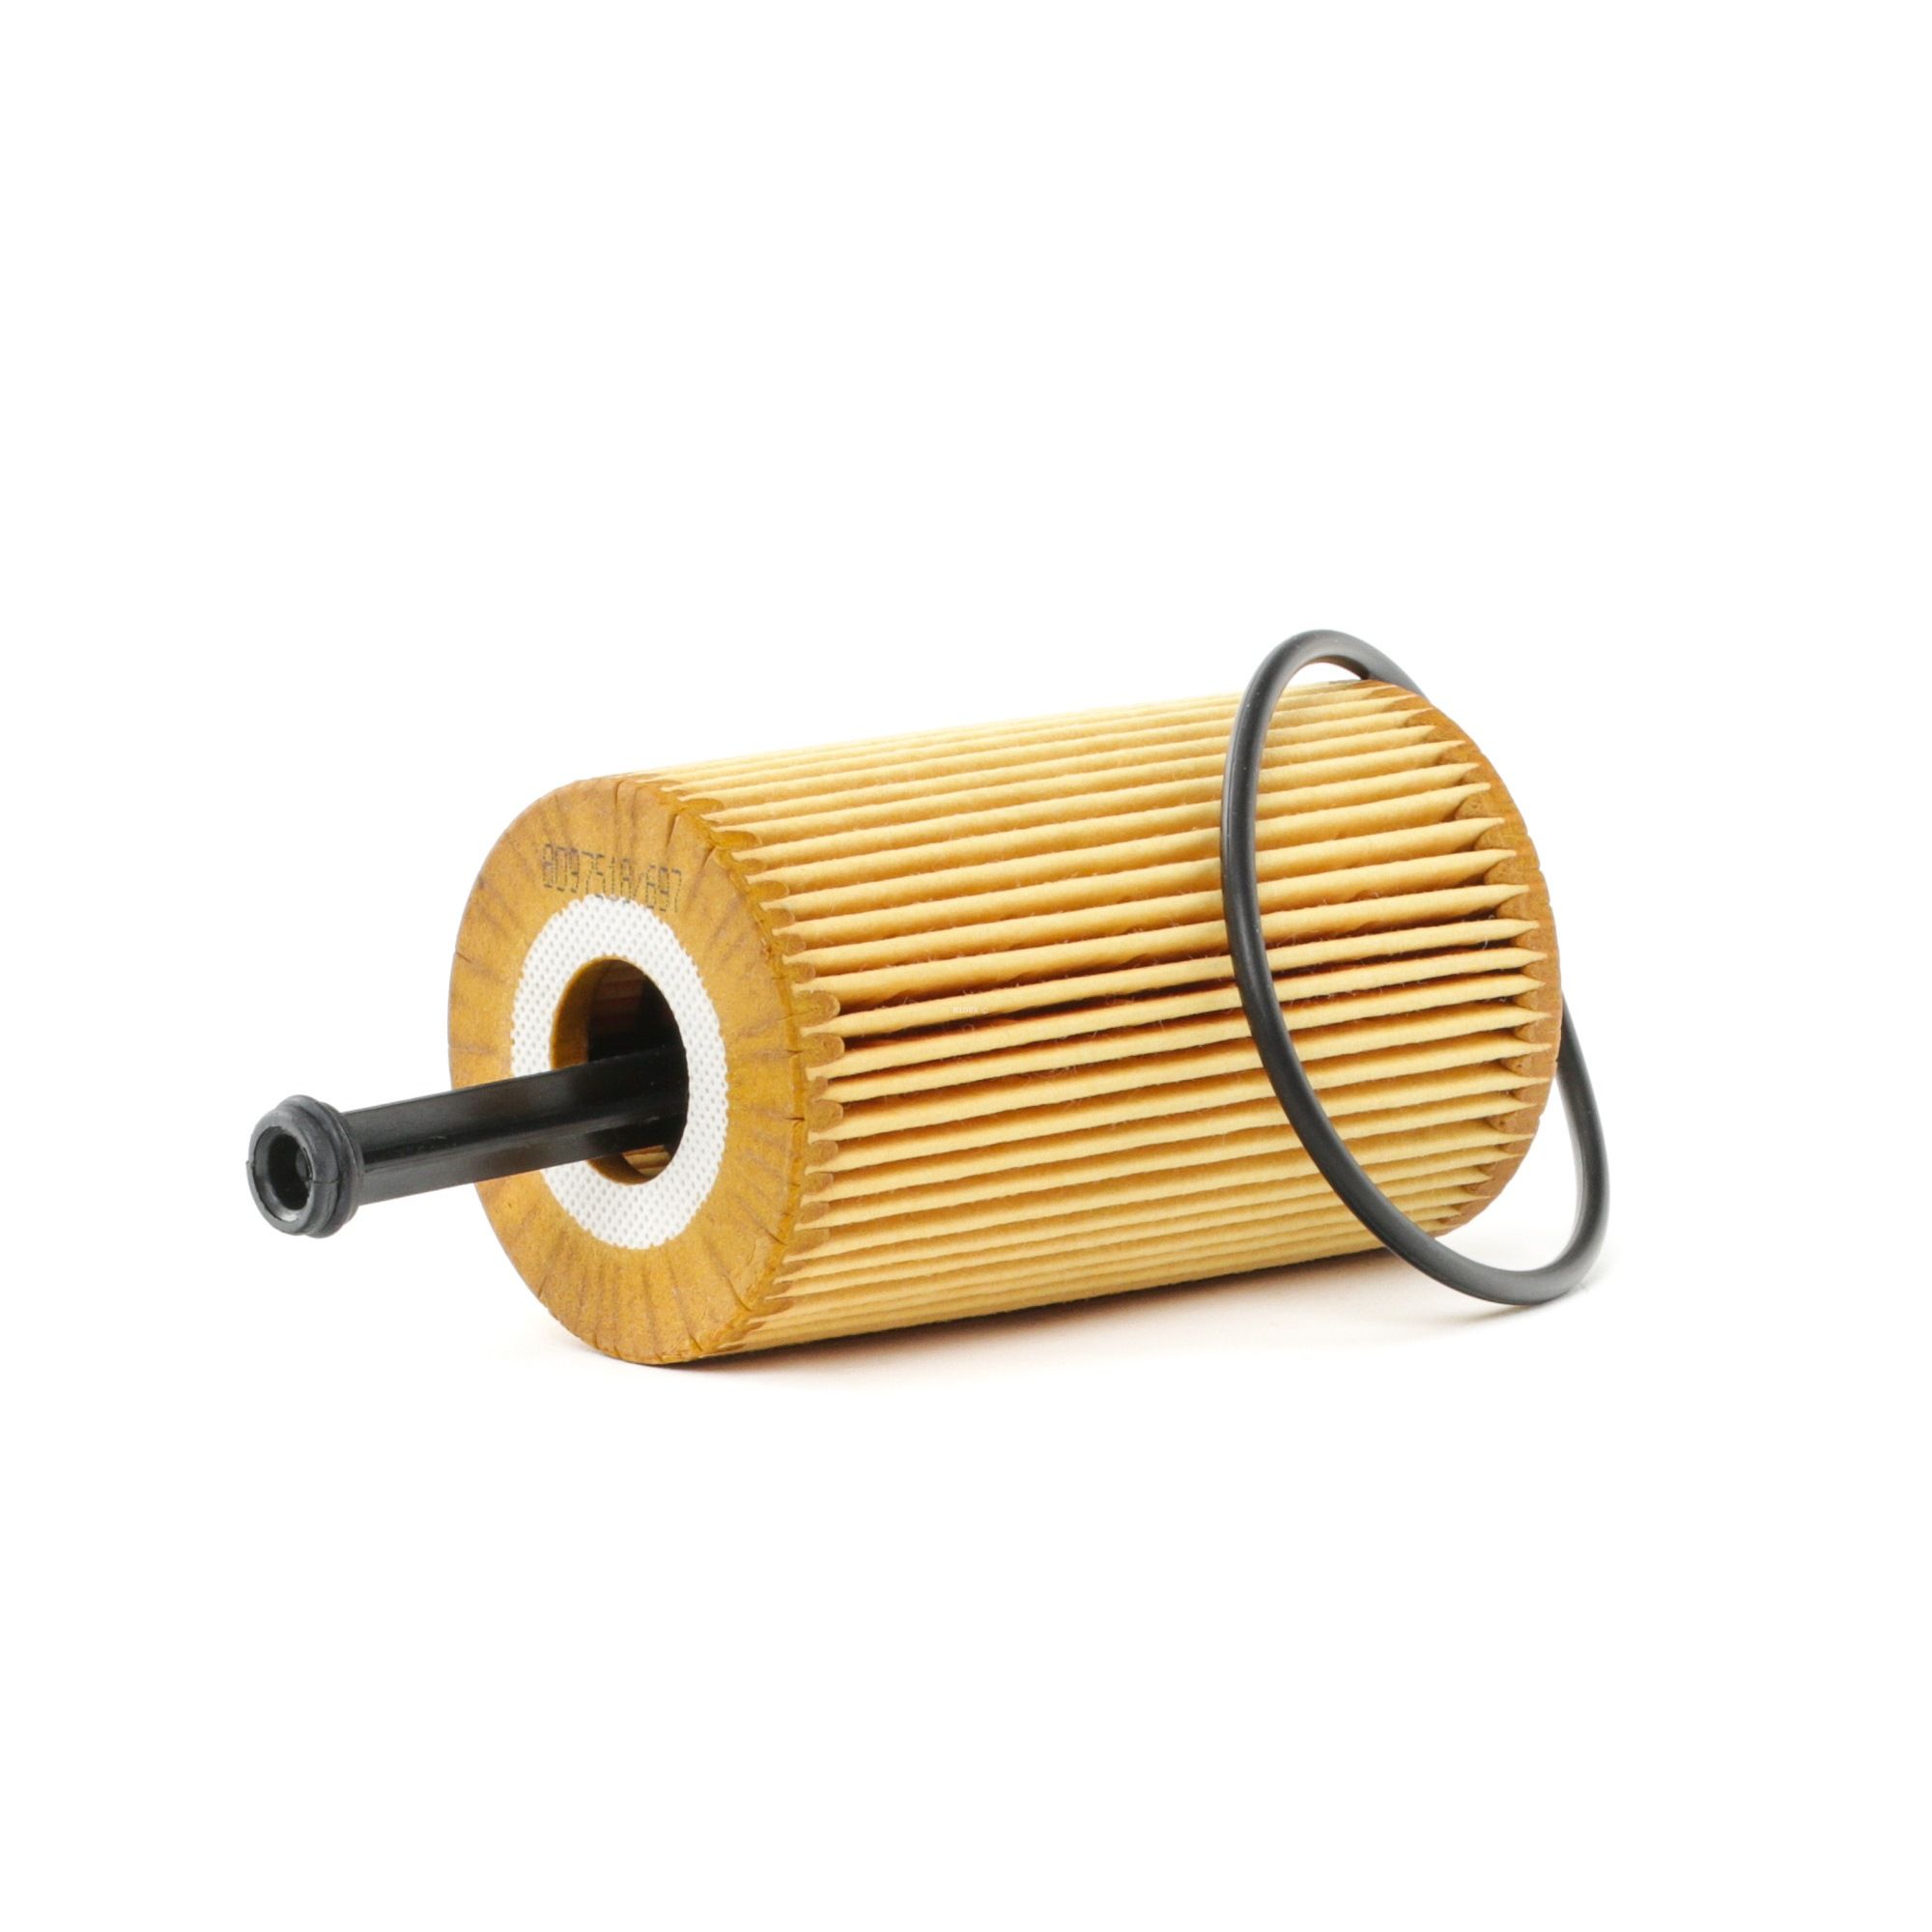 Comprare 7O0055 RIDEX Cartuccia filtro, con anello tenuta Diametro interno: 21mm, Diametro interno 2: 14mm, Diametro interno 2: 14mm, Ø: 60mm, Ø: 60mm, Alt.: 141mm, Altezza 1: 100mm Filtro olio 7O0055 poco costoso